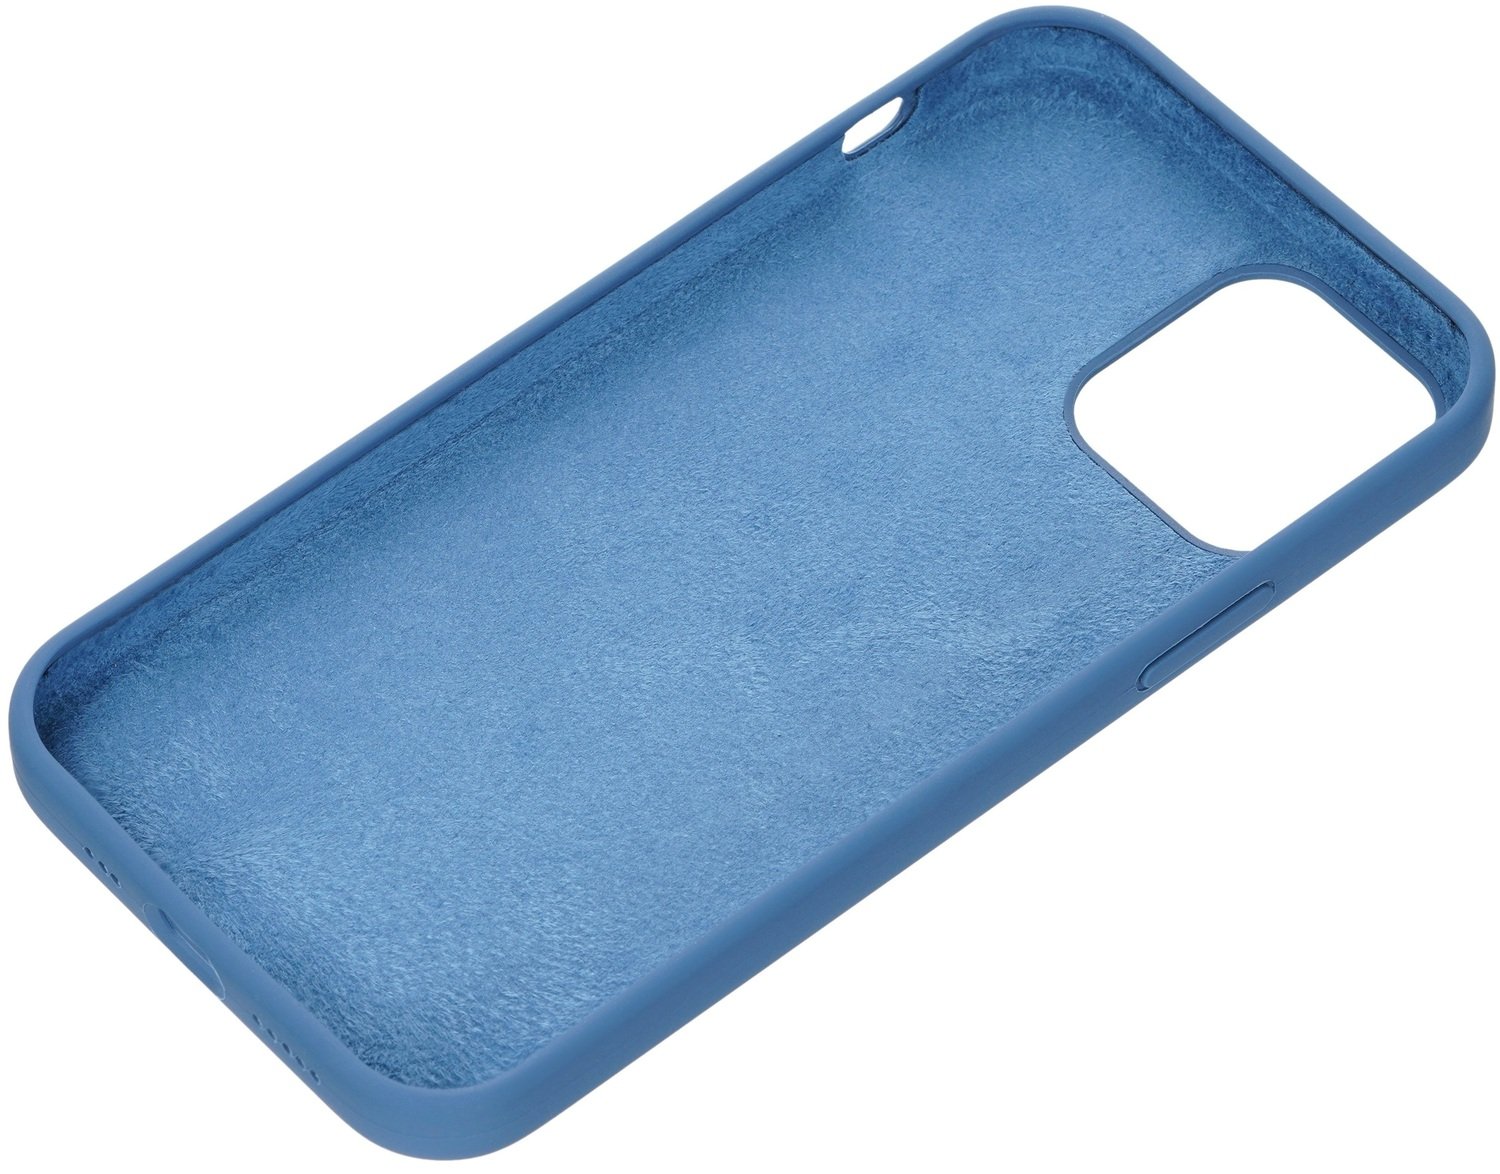 Чохол 2Е для iPhone 12/12 Pro Liquid Silicone Cobalt Blueфото